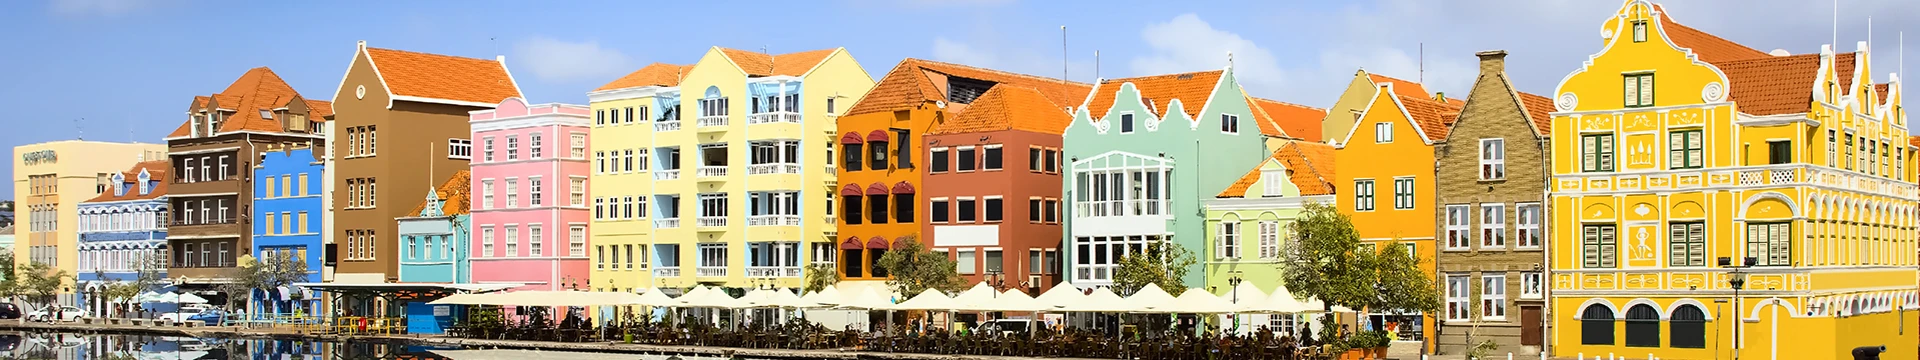 Hotels in Netherlands Antilles